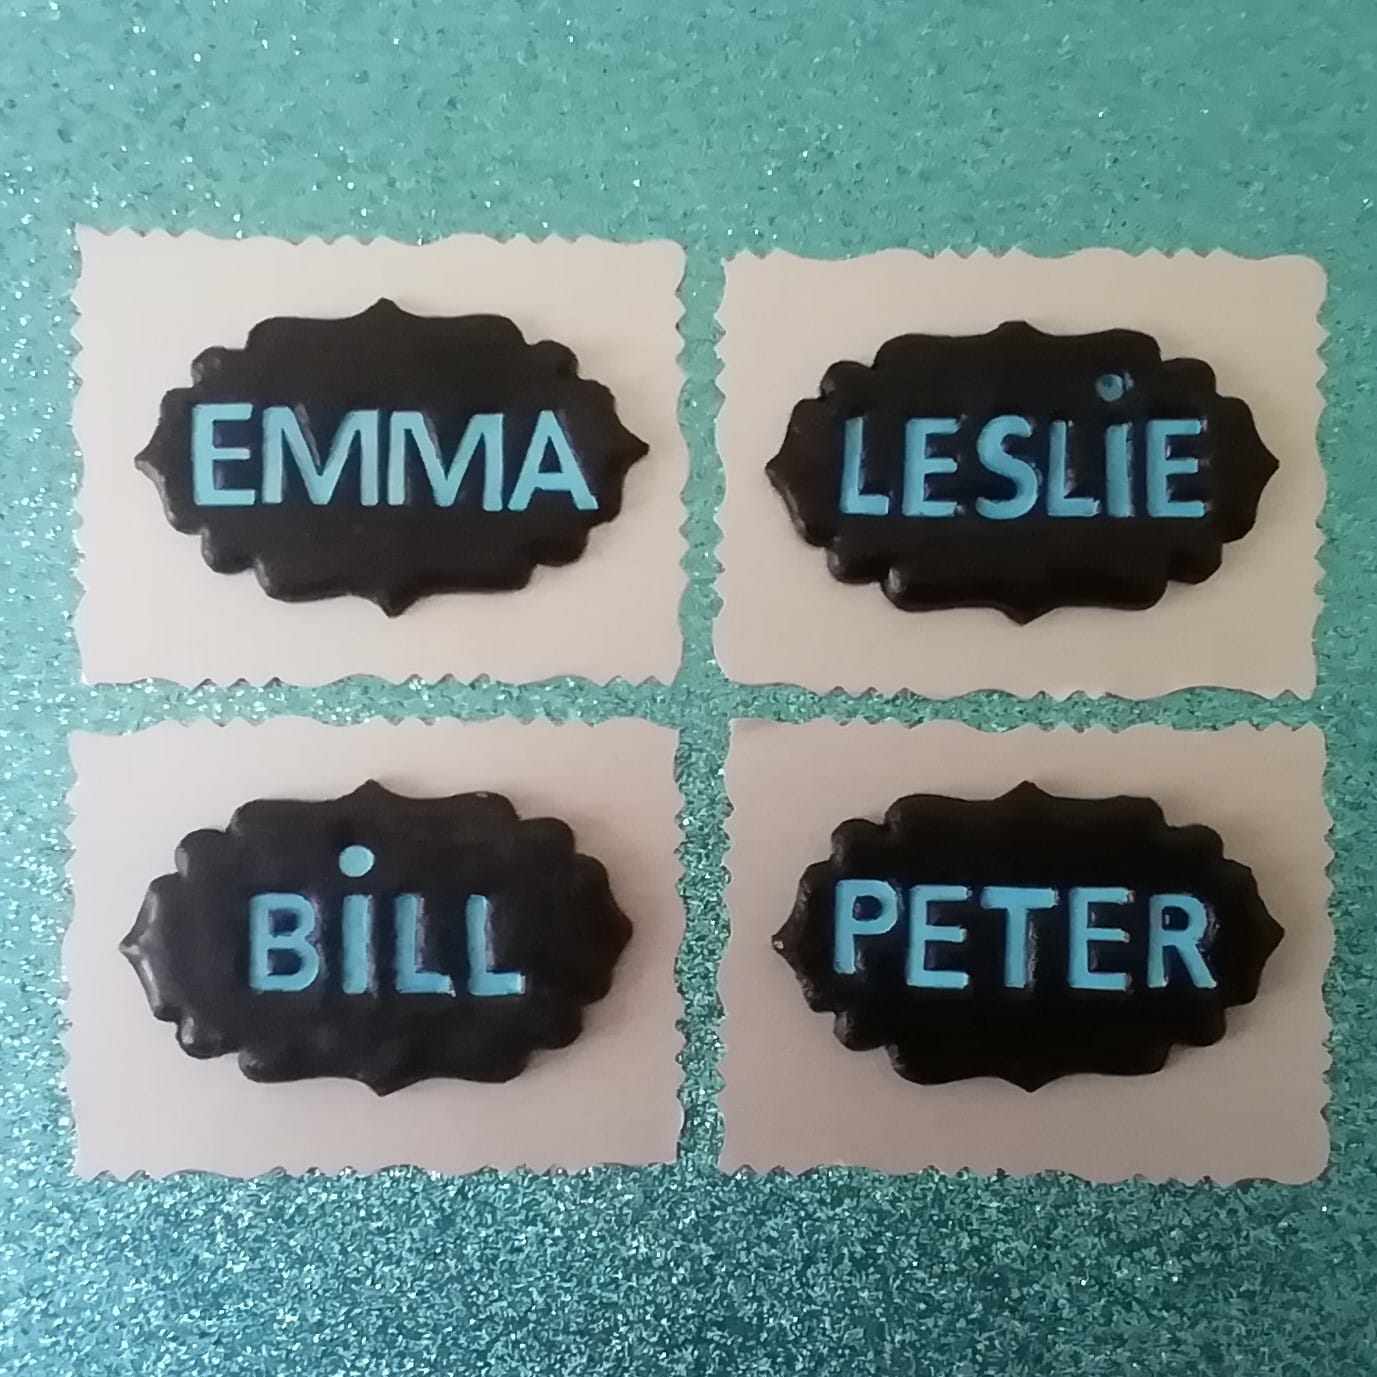 Les prénoms Emma, Leslie, Bill et Peter ont été réalisés en pâte polymer et ont été disposés côte à côte sur un fond bleu.